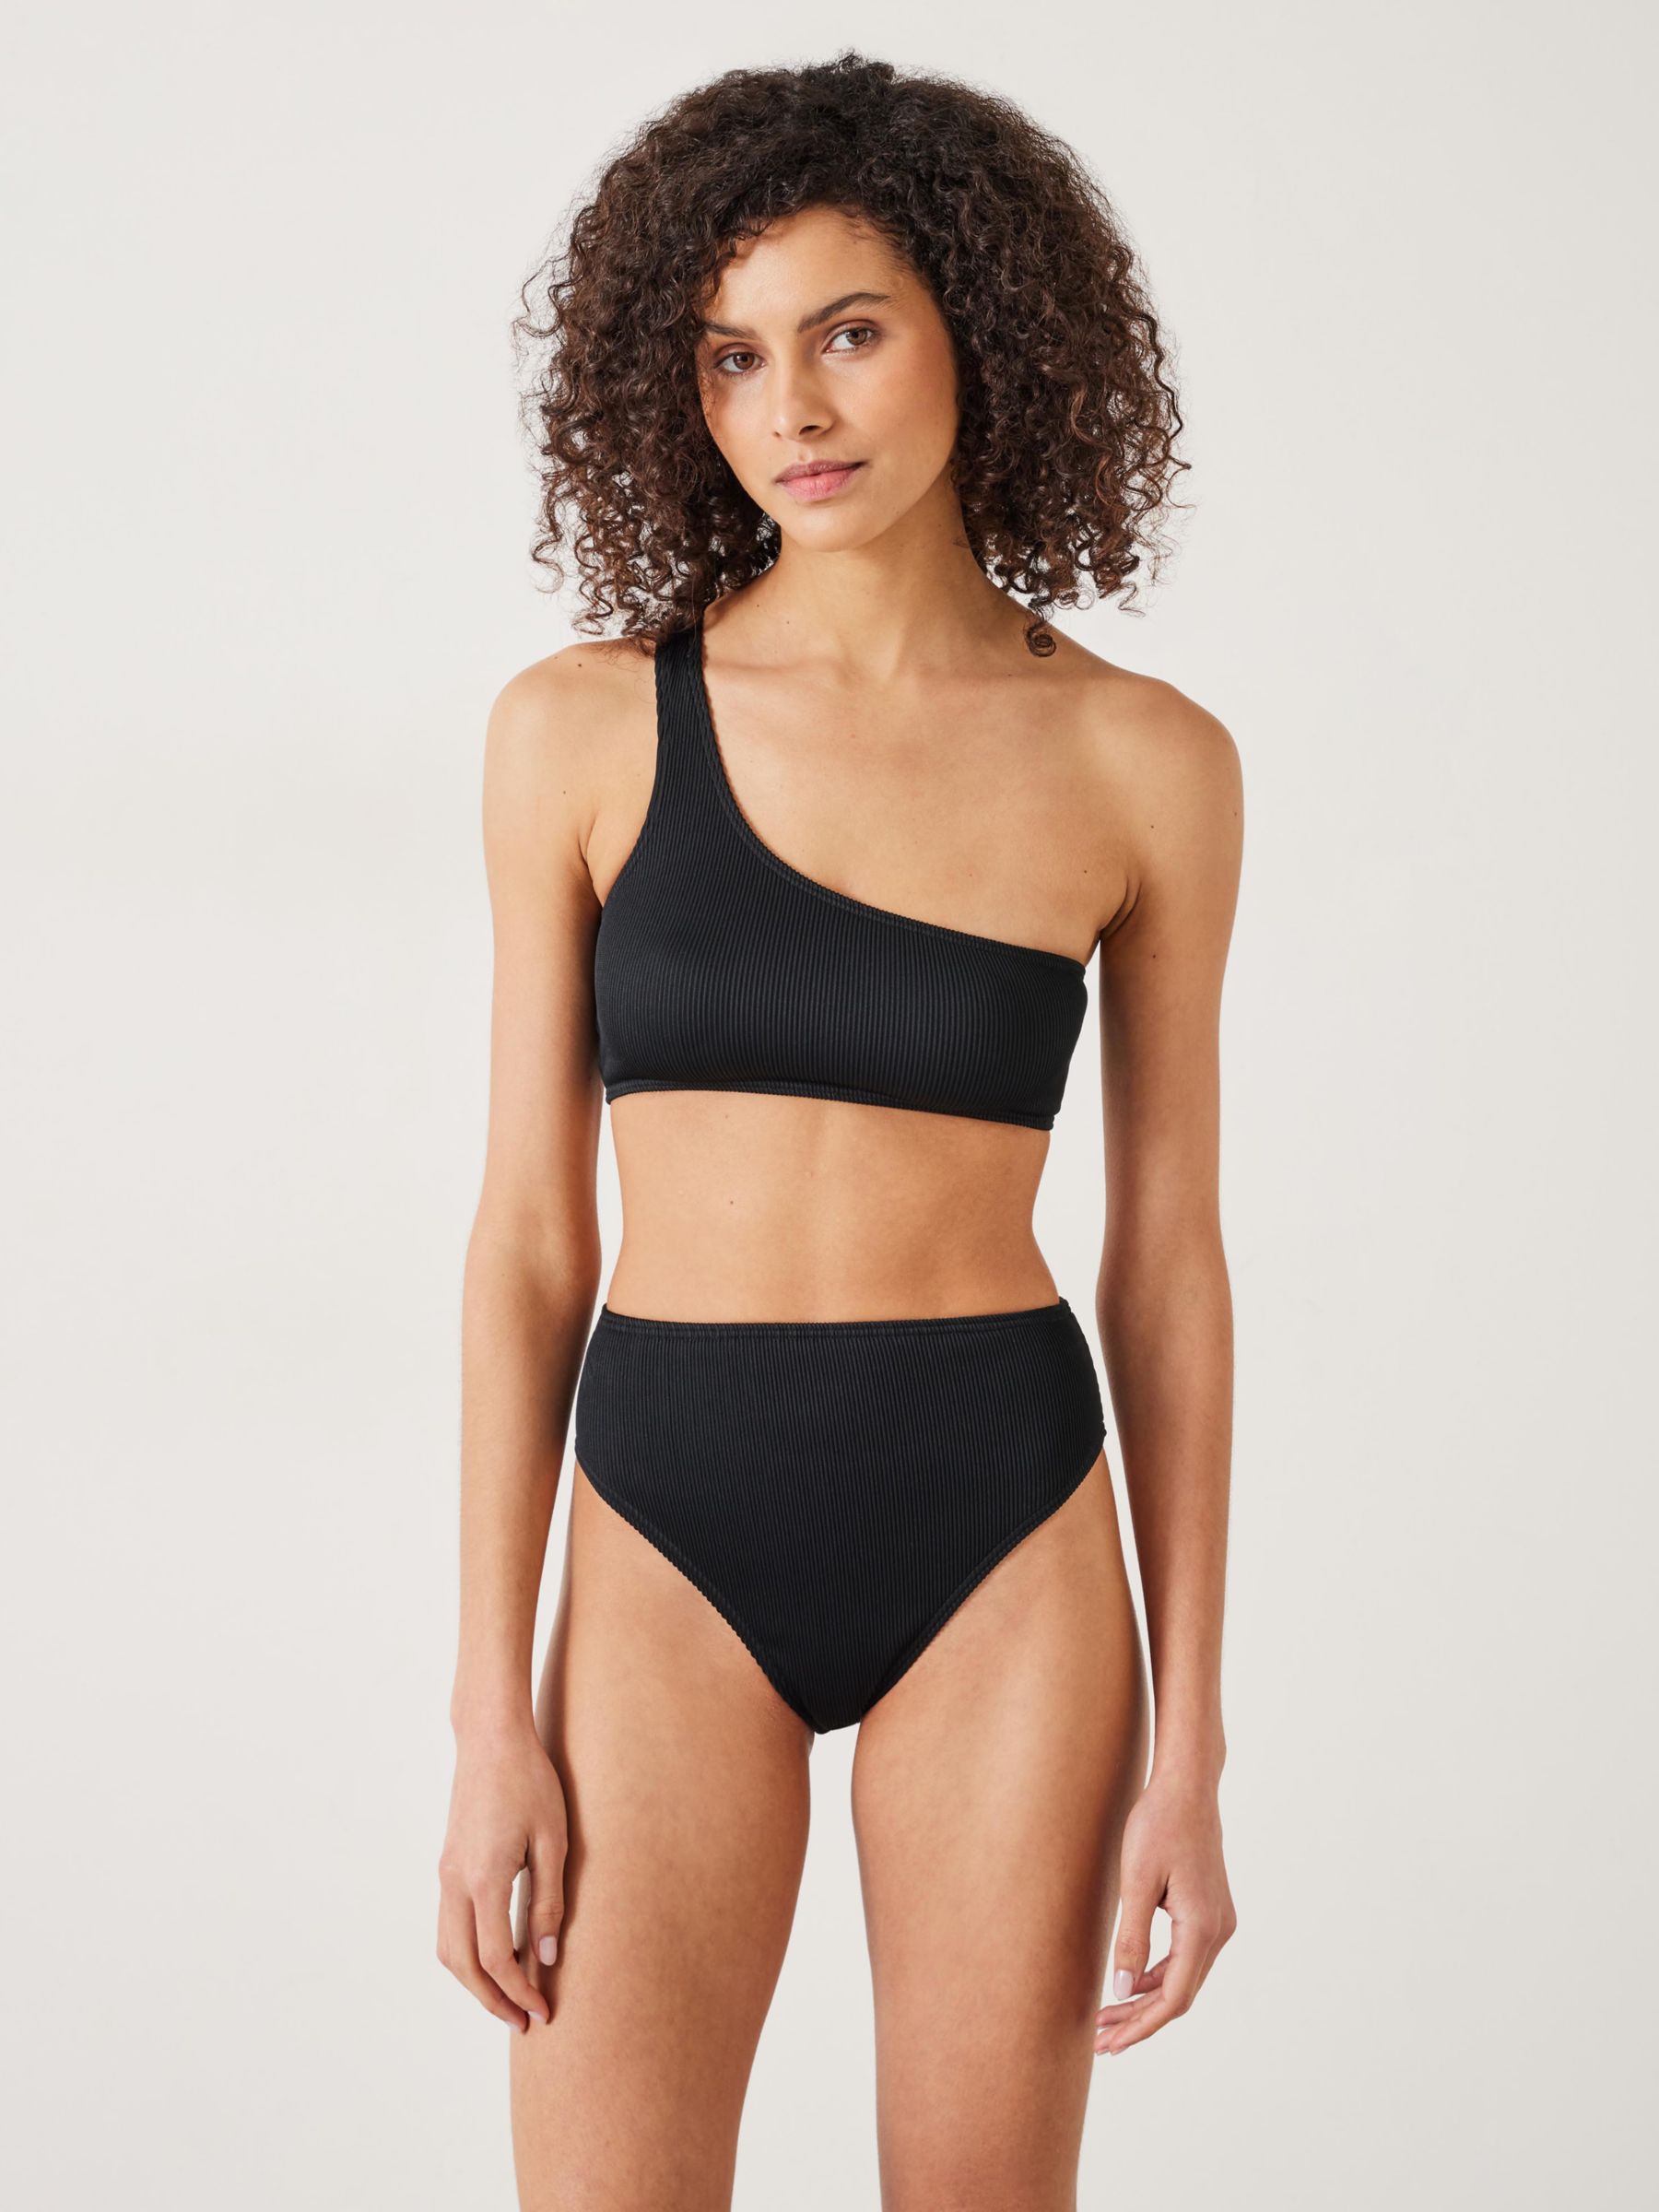 HUSH Olivia Asymmetric Ribbed Bikini Top, Black, 10